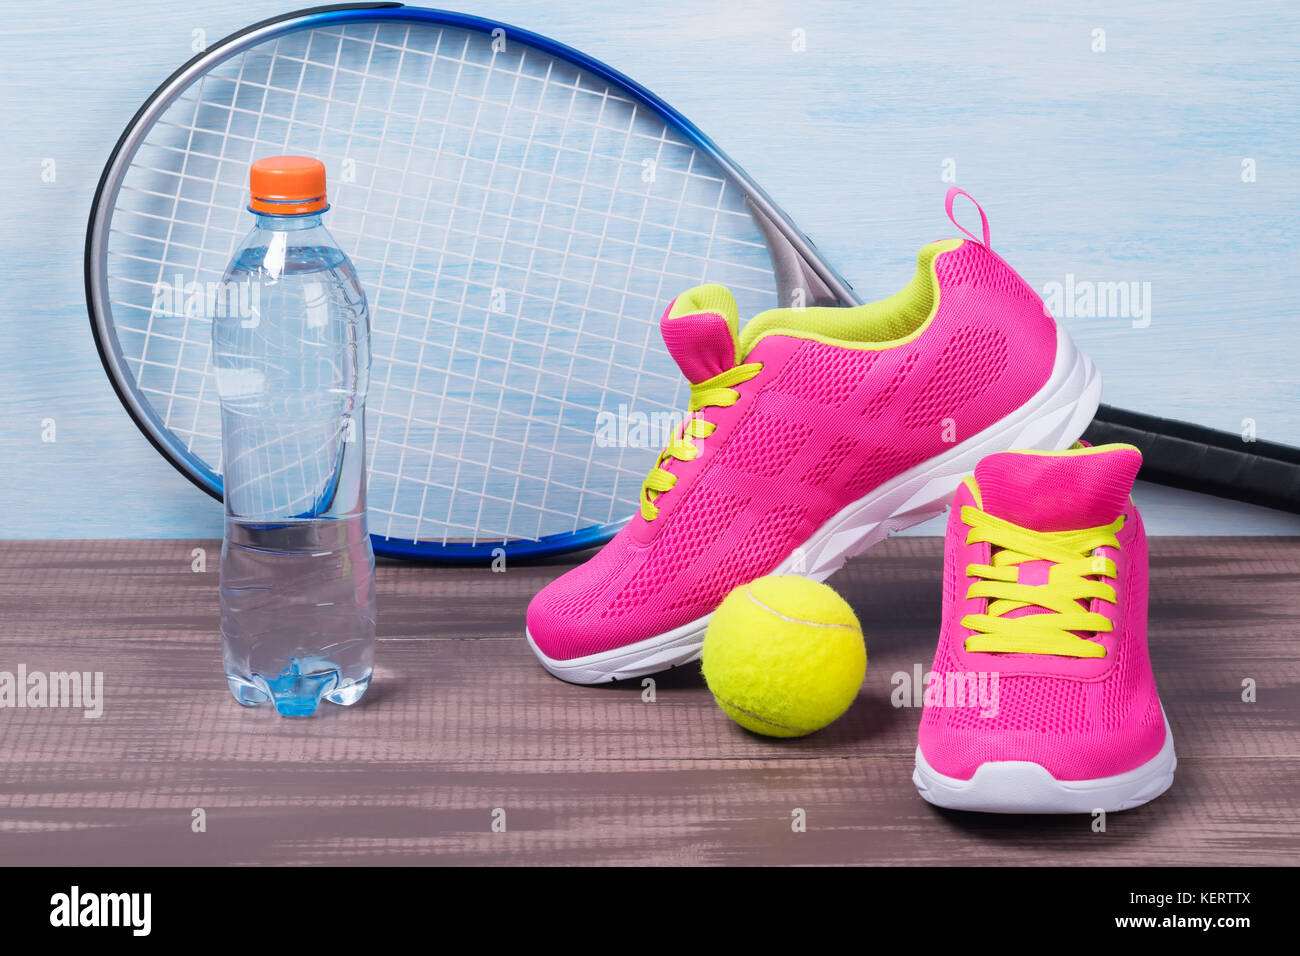 Rosa sneakers con lacci di colore giallo per il gioco del tennis Foto Stock